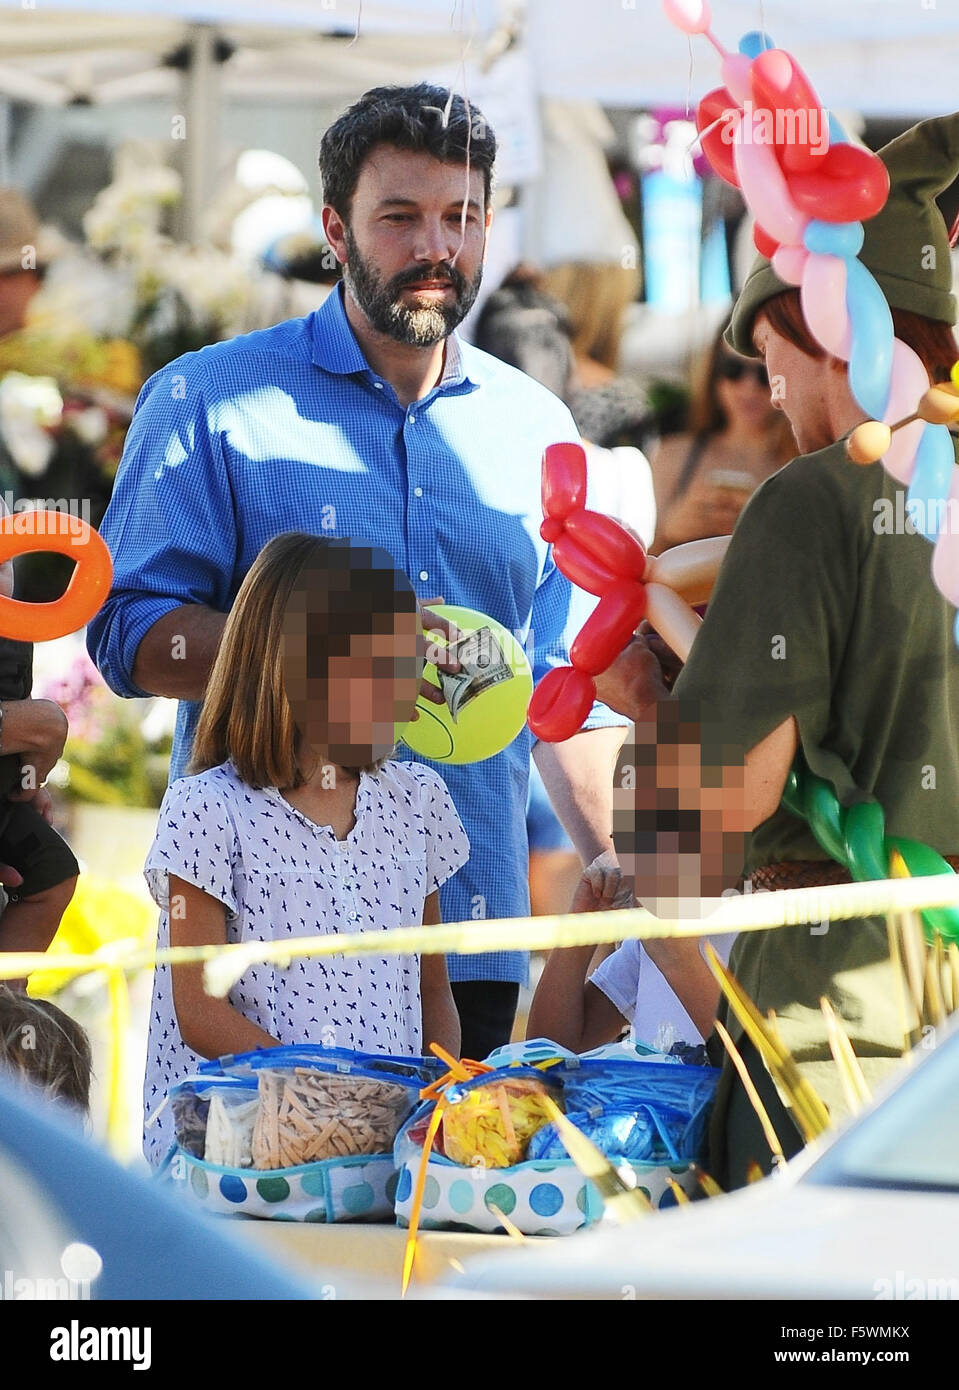 Ben Affleck und Jennifer Garner nehmen ihre drei Kinder auf dem Bauernmarkt Brentwood mit: Ben Affleck, Violet Affleck wo: Los Angeles, California, Vereinigte Staaten von Amerika als: 13 Sep 2015 Stockfoto